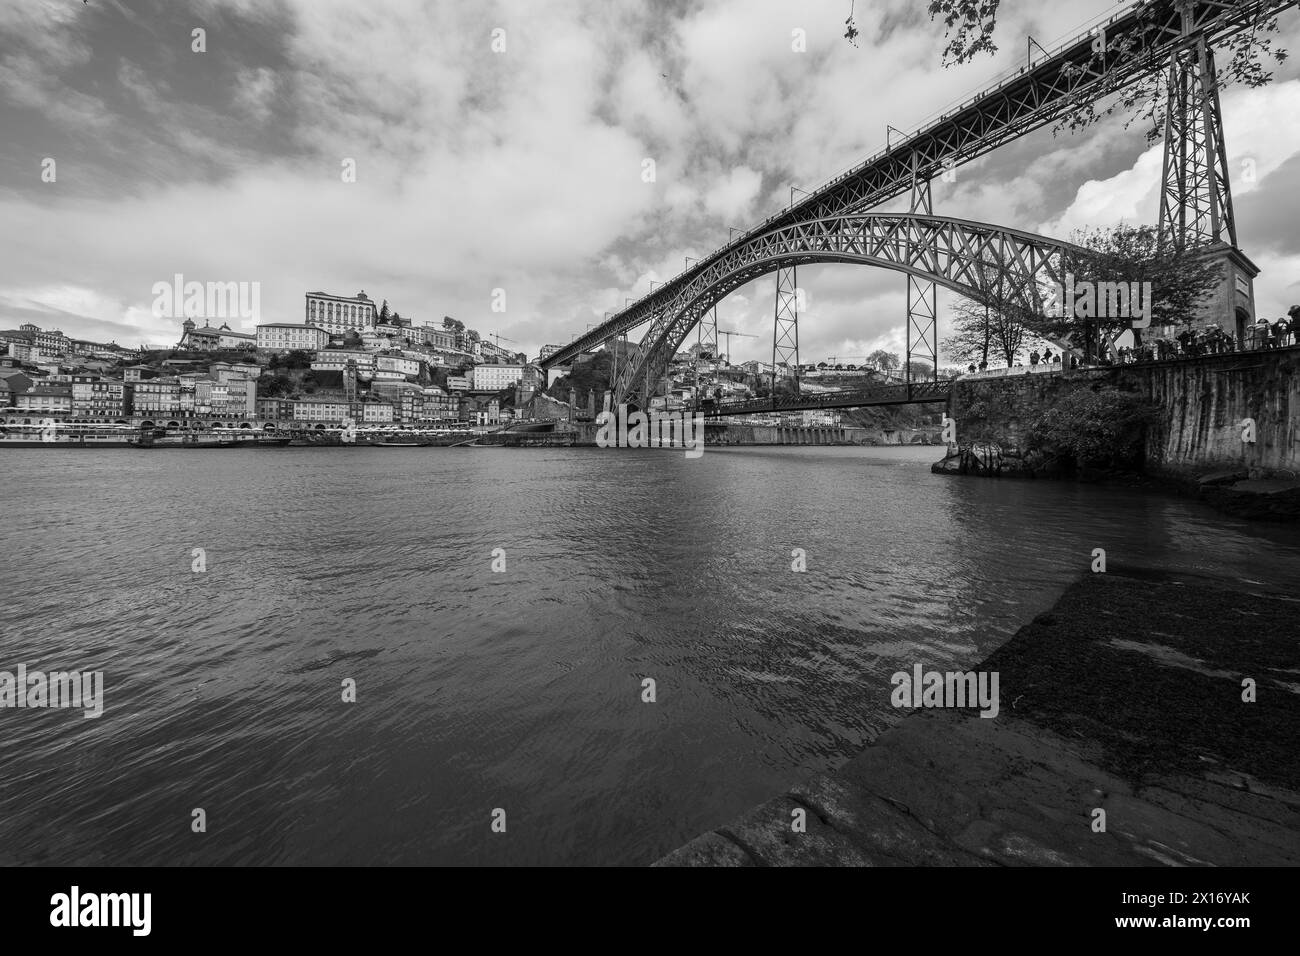 Blick auf die Luis I-Brücke, eine Doppelstockbrücke mit Metallbogen, die den Fluss Douro zwischen den Städten Porto und Vila Nova de Gaia überspannt, 15. April 202 Stockfoto